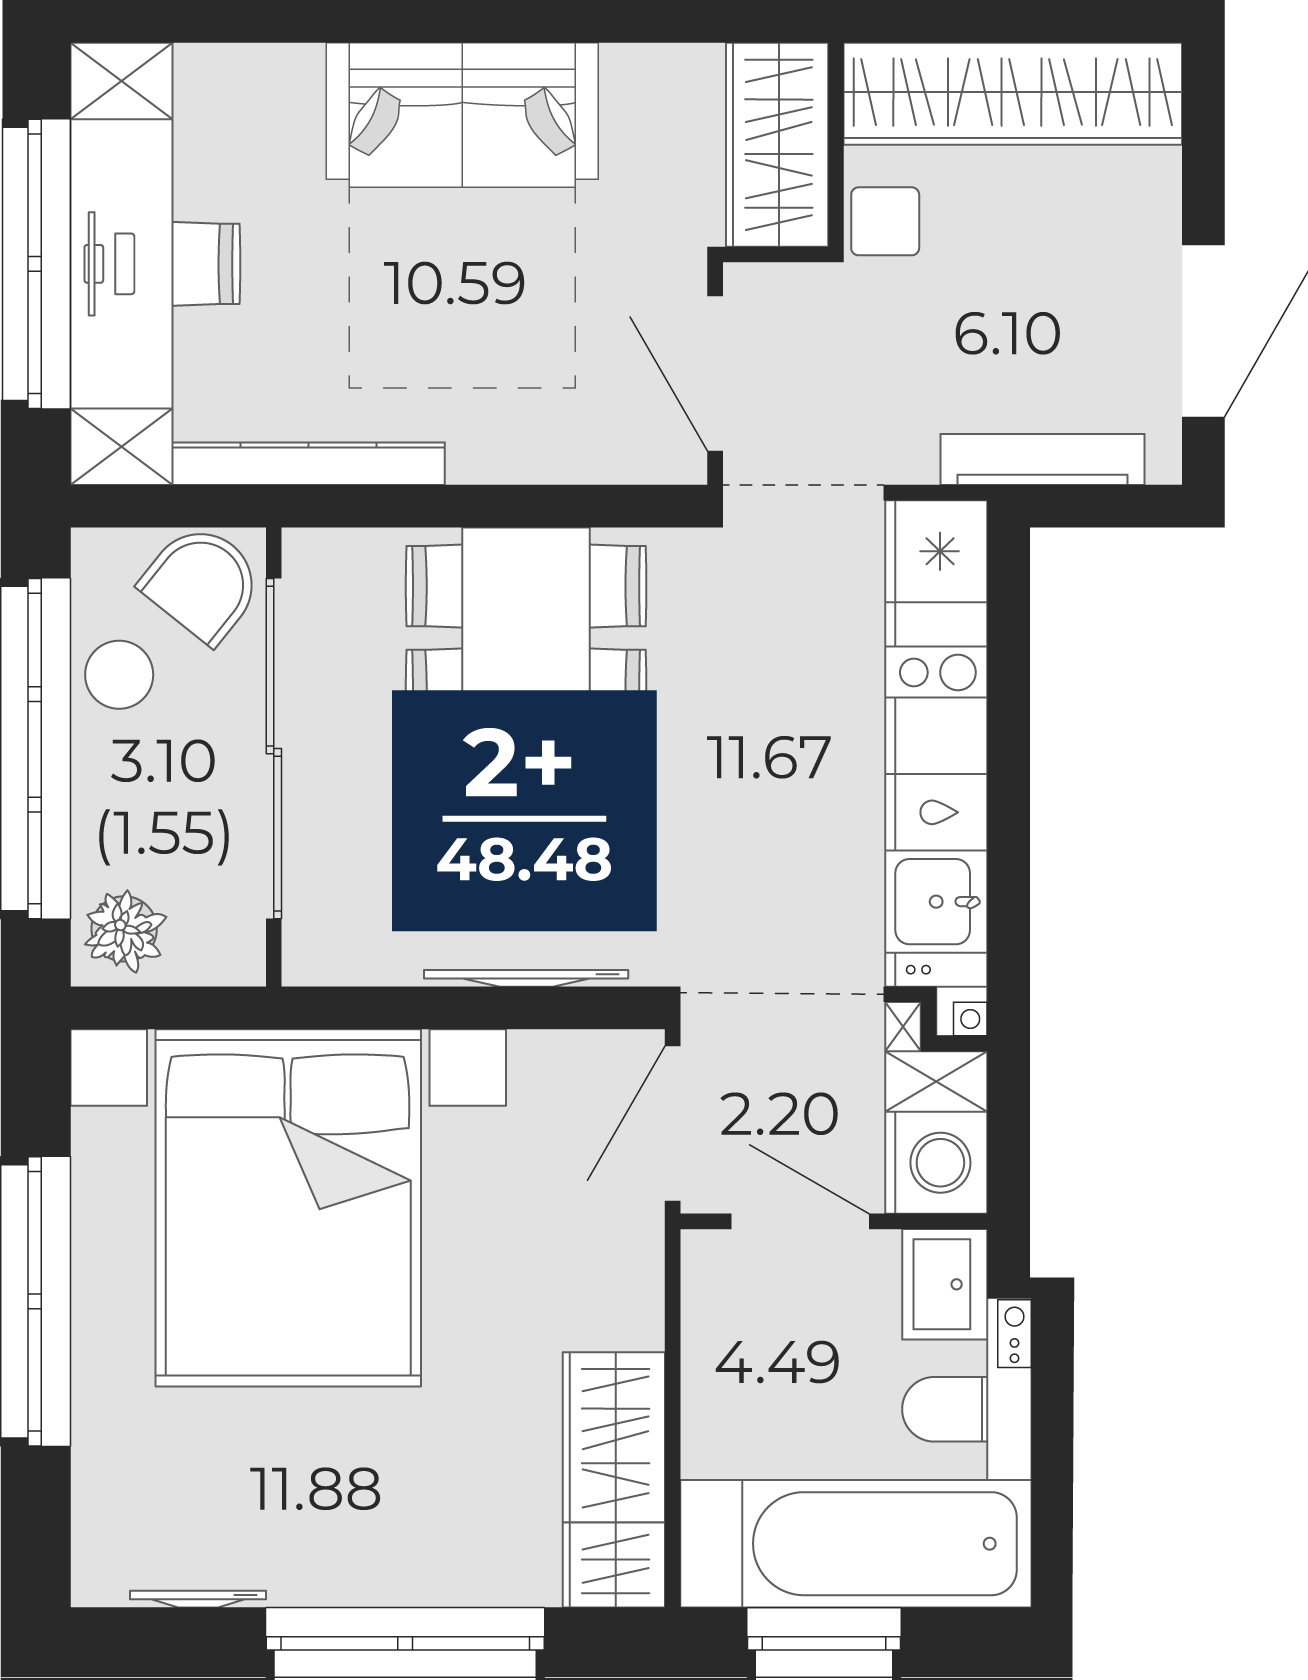 Квартира № 81, 2-комнатная, 48.48 кв. м, 8 этаж